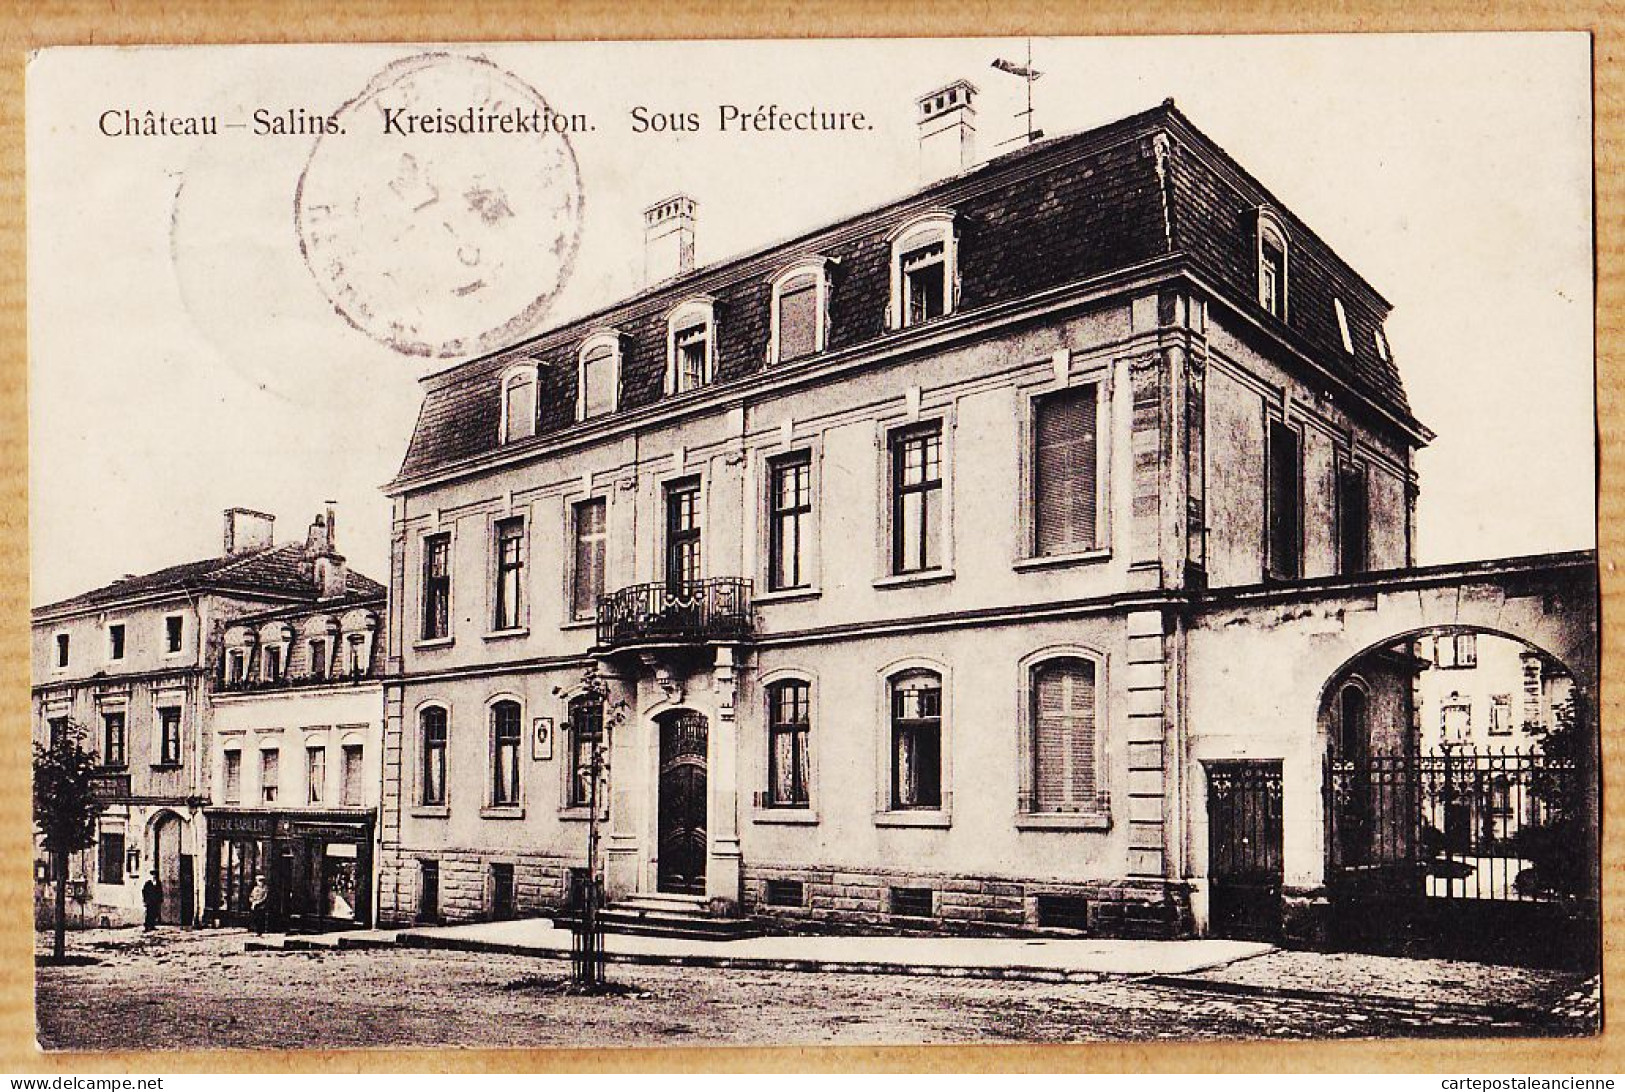 30520 / CHÂTEAU-SALINS (57) Période Empire Allemand Kreisdirektion Sous-Préfecture 1911 à ROUQUIER Cuisinier Le Pouget - Chateau Salins